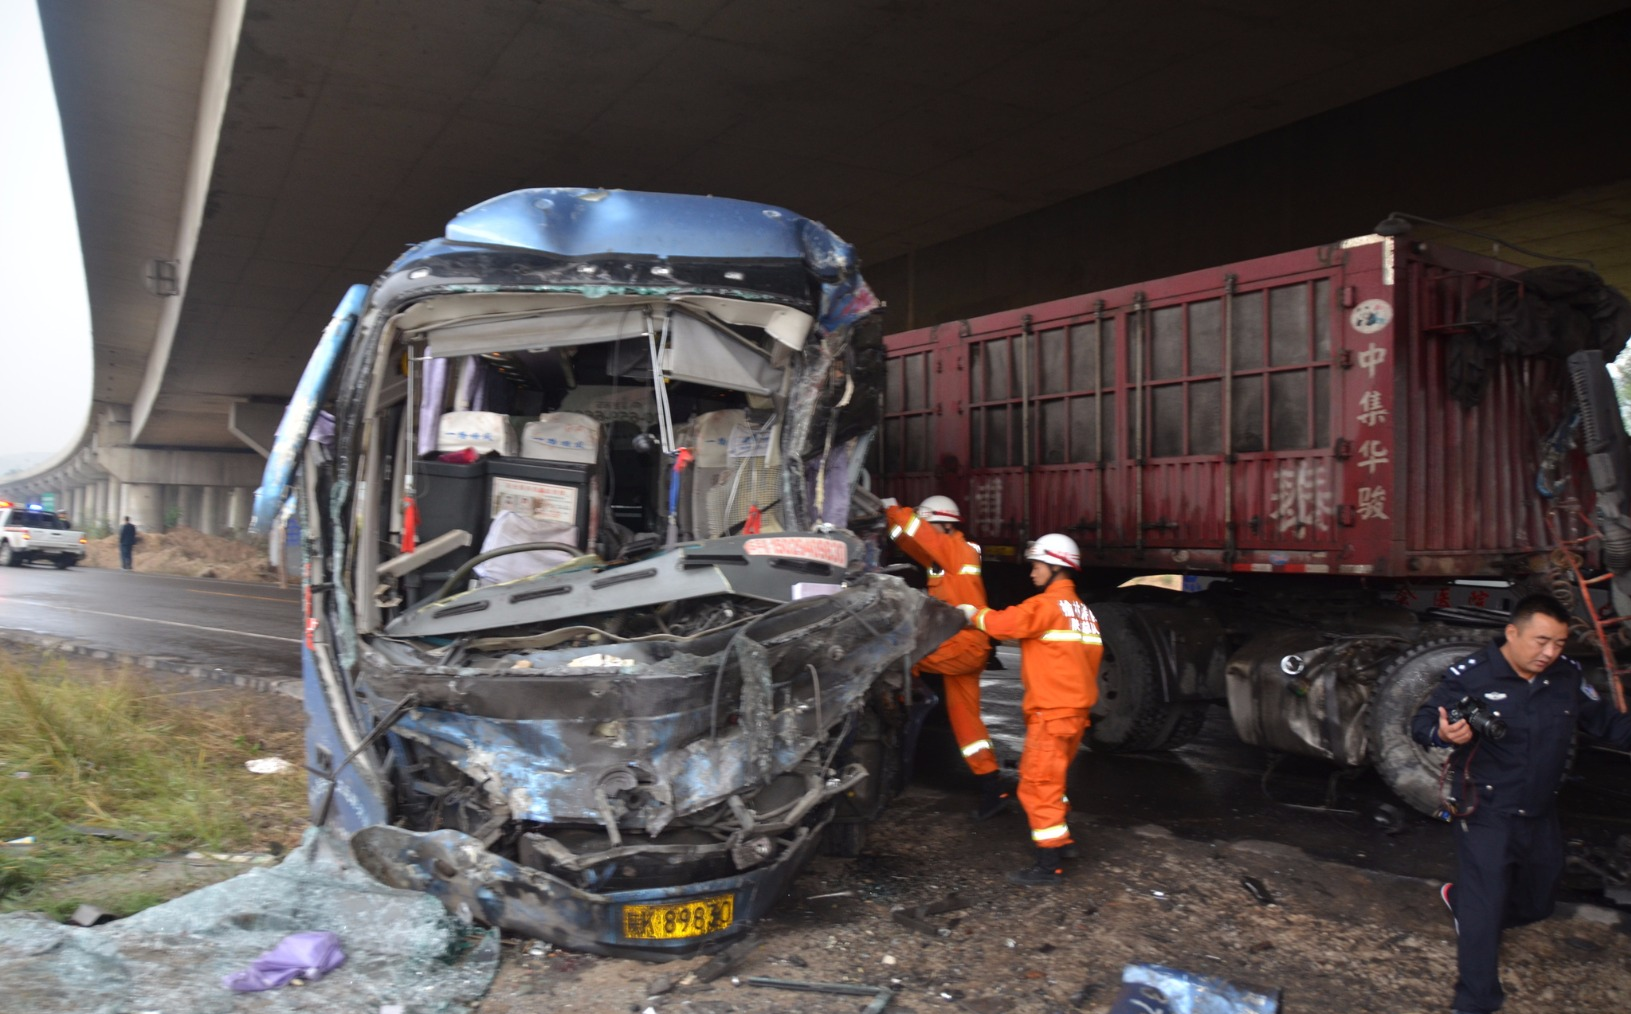 据了解，发生事故的客车是从榆林开往清涧县的，车内当时有20多名乘客，受伤的乘客被送往榆林、绥德等地医院救治。目前，事故原因正在调查中。